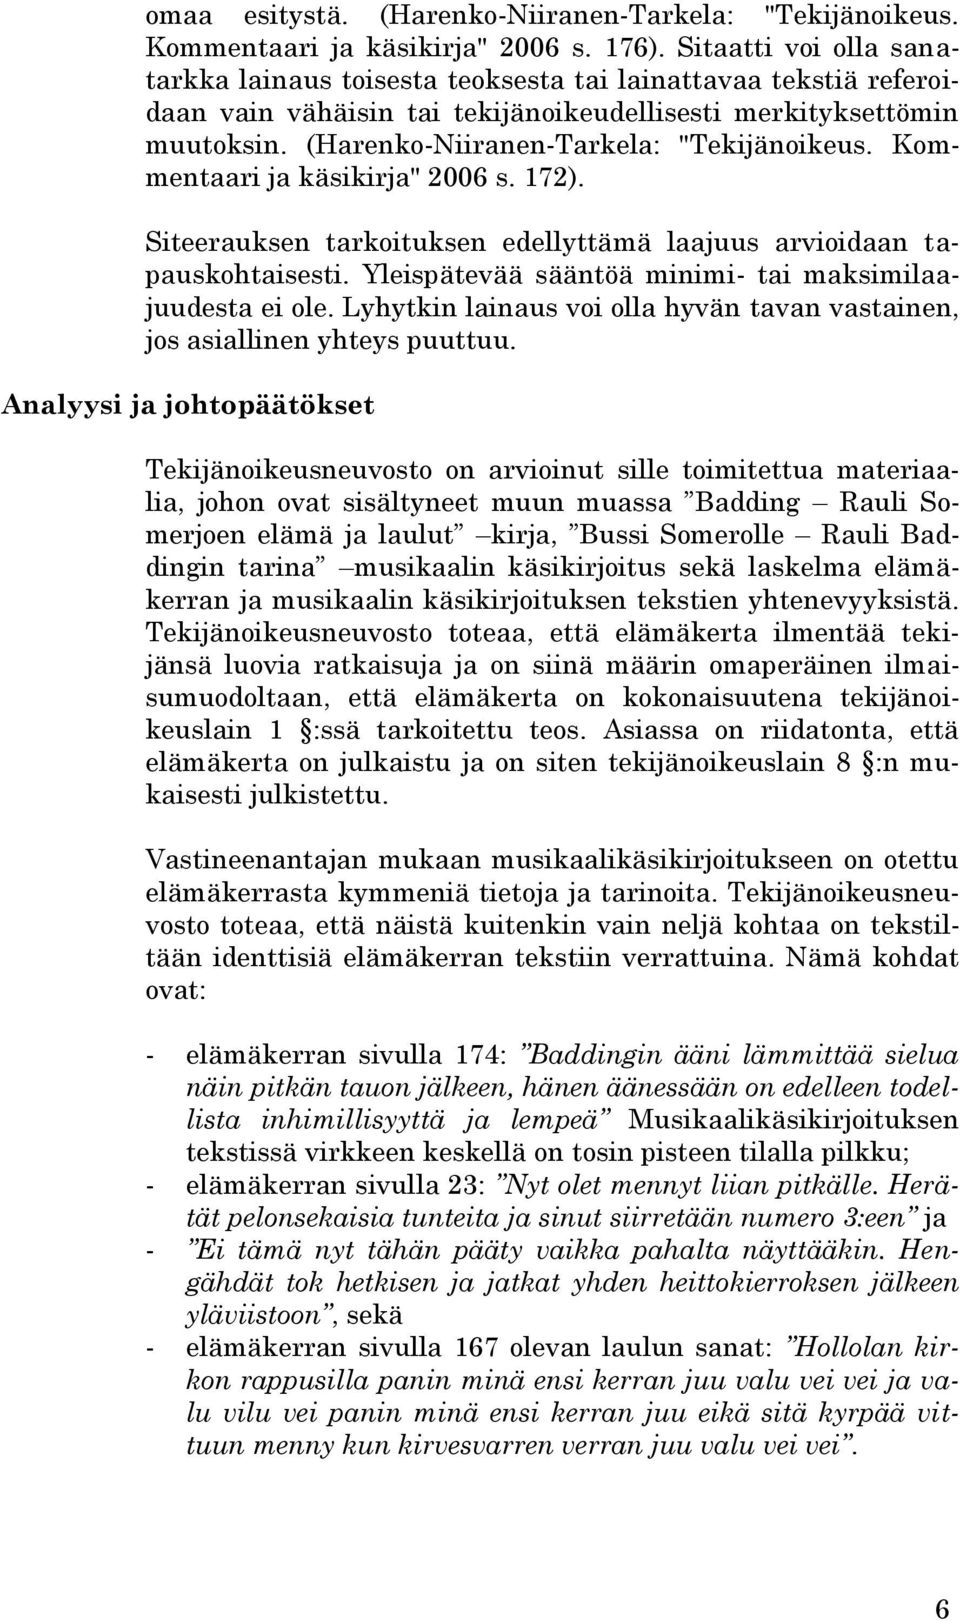 (Harenko-Niiranen-Tarkela: "Tekijänoikeus. Kommentaari ja käsikirja" 2006 s. 172). Siteerauksen tarkoituksen edellyttämä laajuus arvioidaan tapauskohtaisesti.